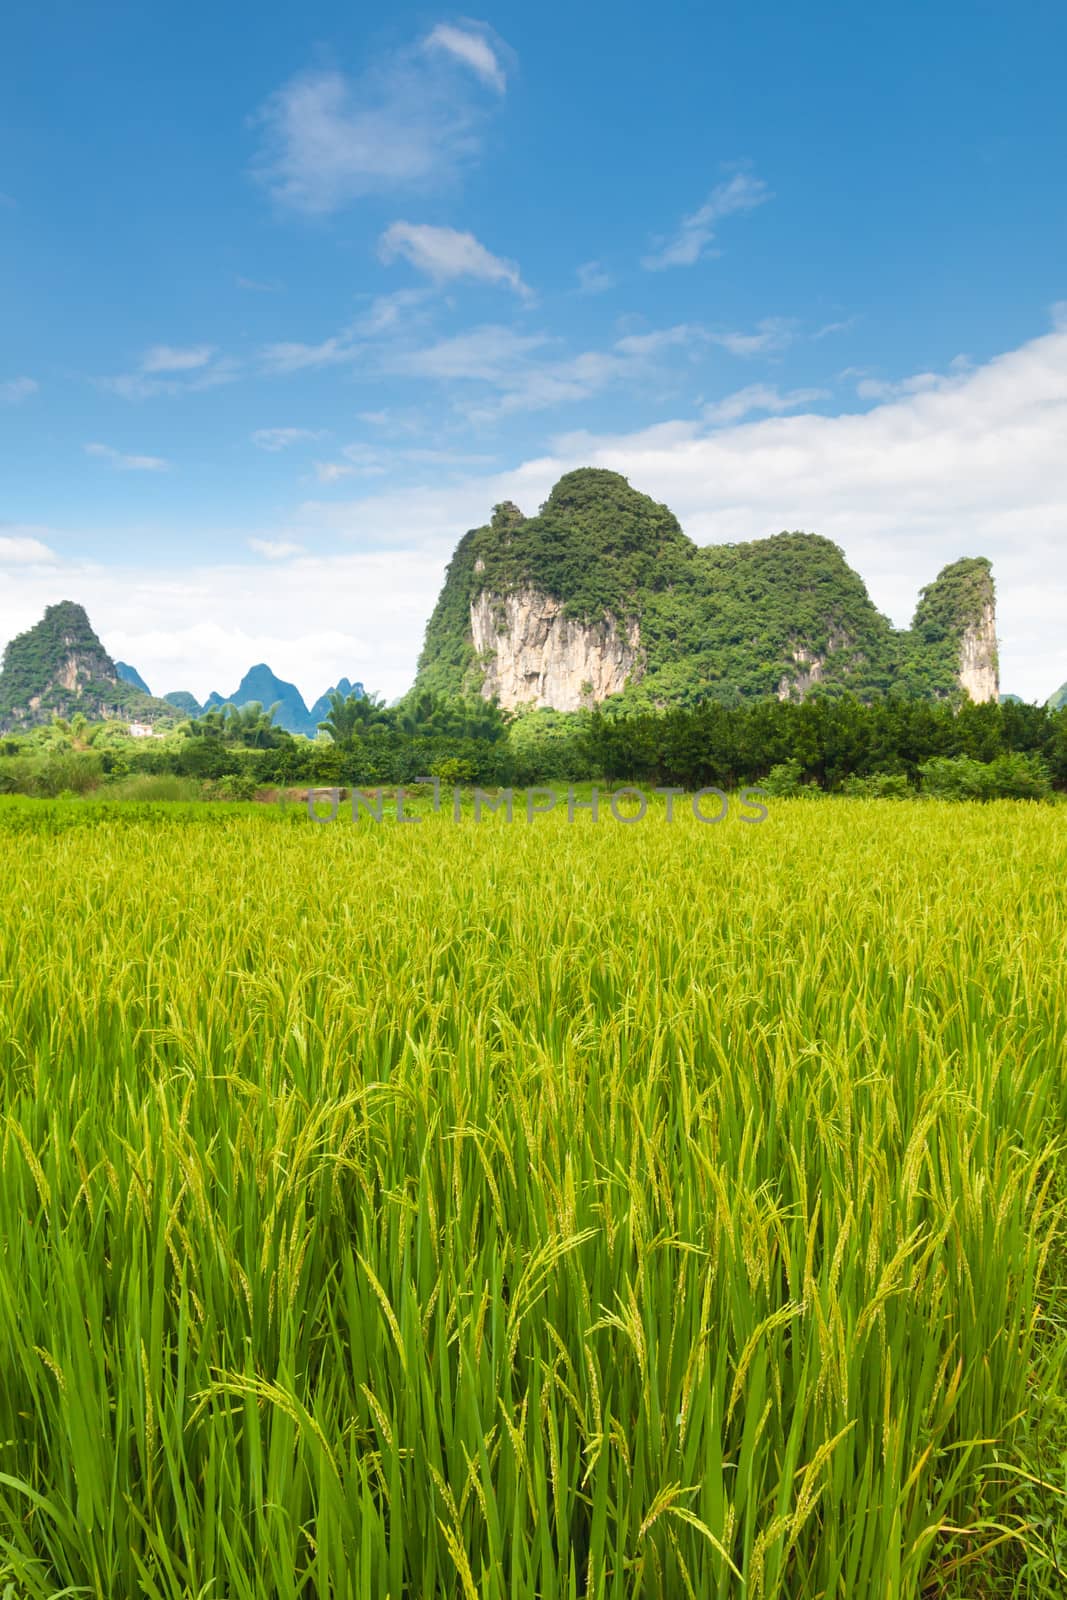 Idyllic photo of rice fields in southern china